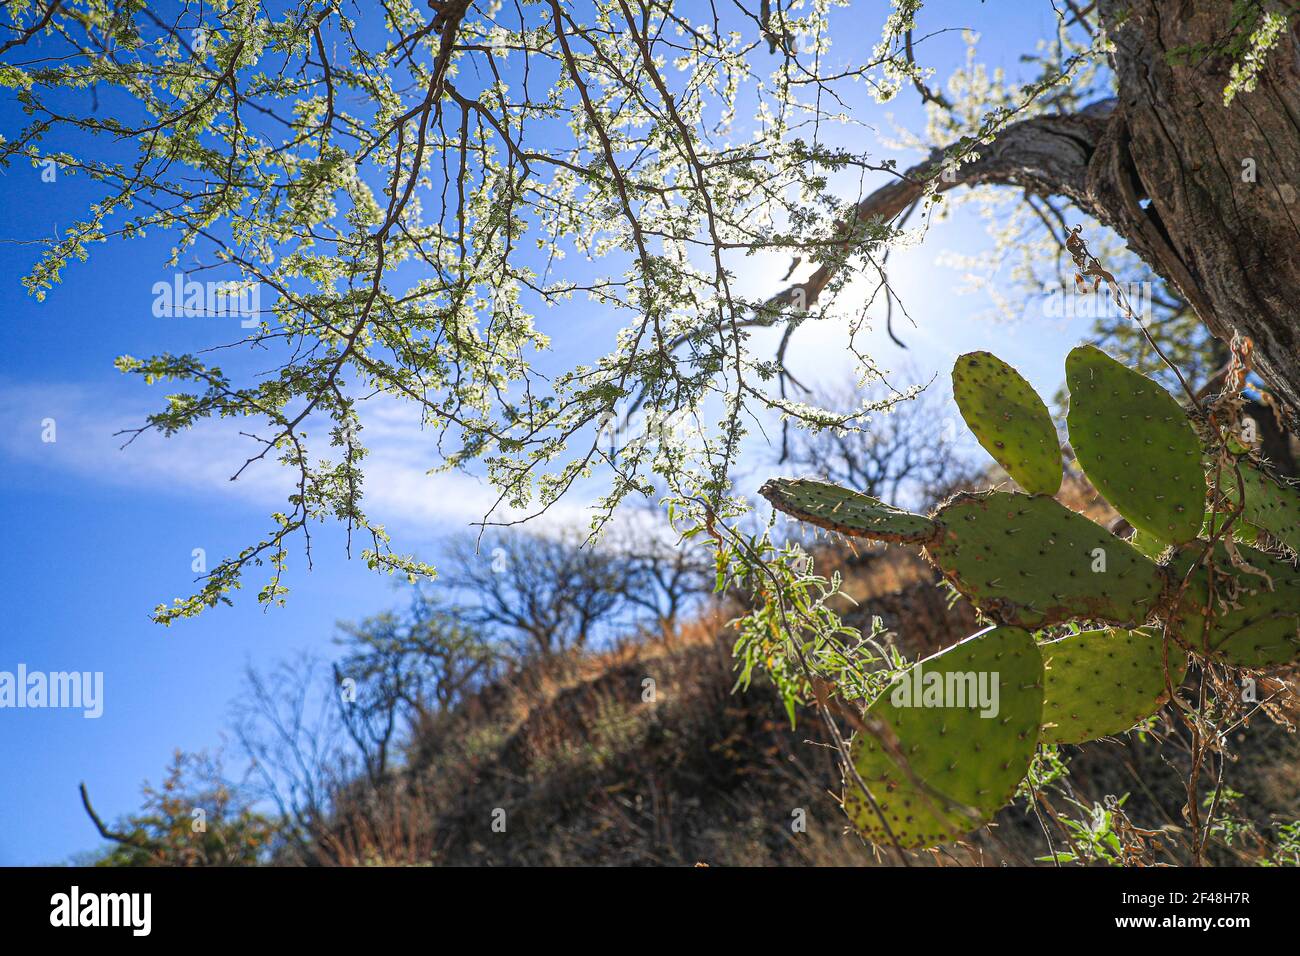 Grüne flache abgerundete Stängel von Kakteen und Mesquite-Baumzweigen in der Sonora-Wüste. Moctezuma, Sonora Mexiko ... Flache grüne abgerundete Cladoden von opunt Stockfoto